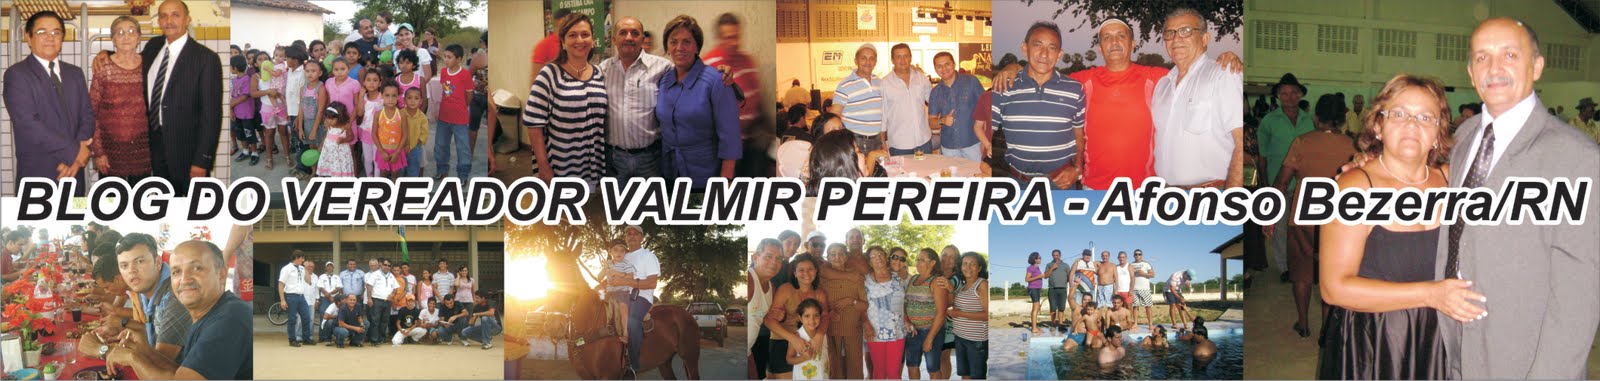 Blog do Vereador Valmir